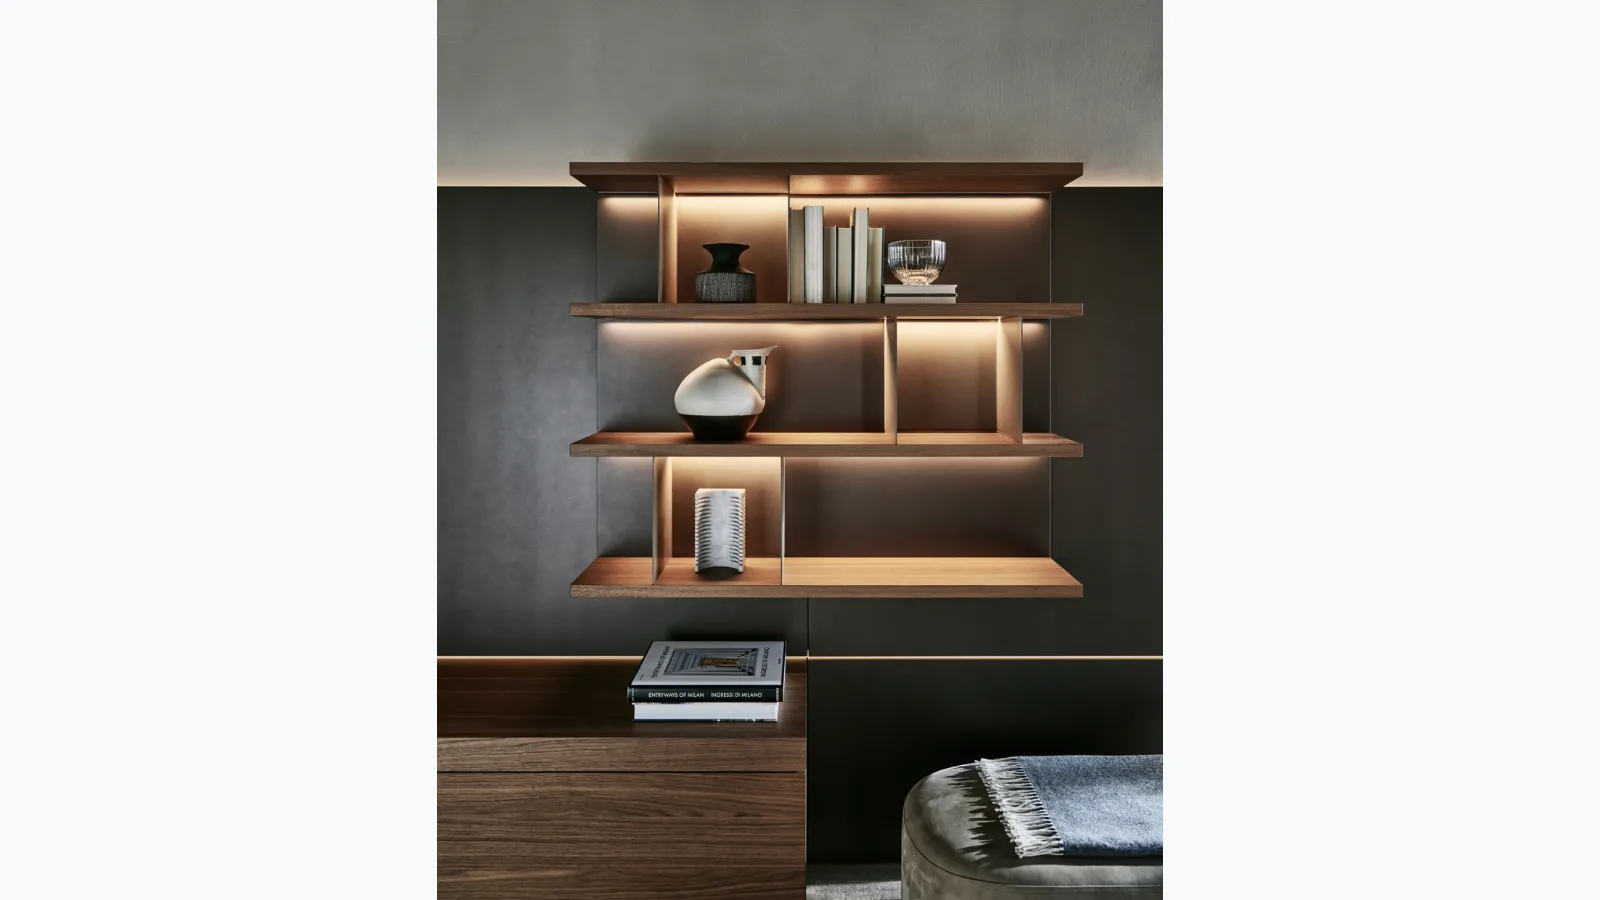 Libreria sospesa in legno con separatori in cuoio Grid 02 di Molteni & C